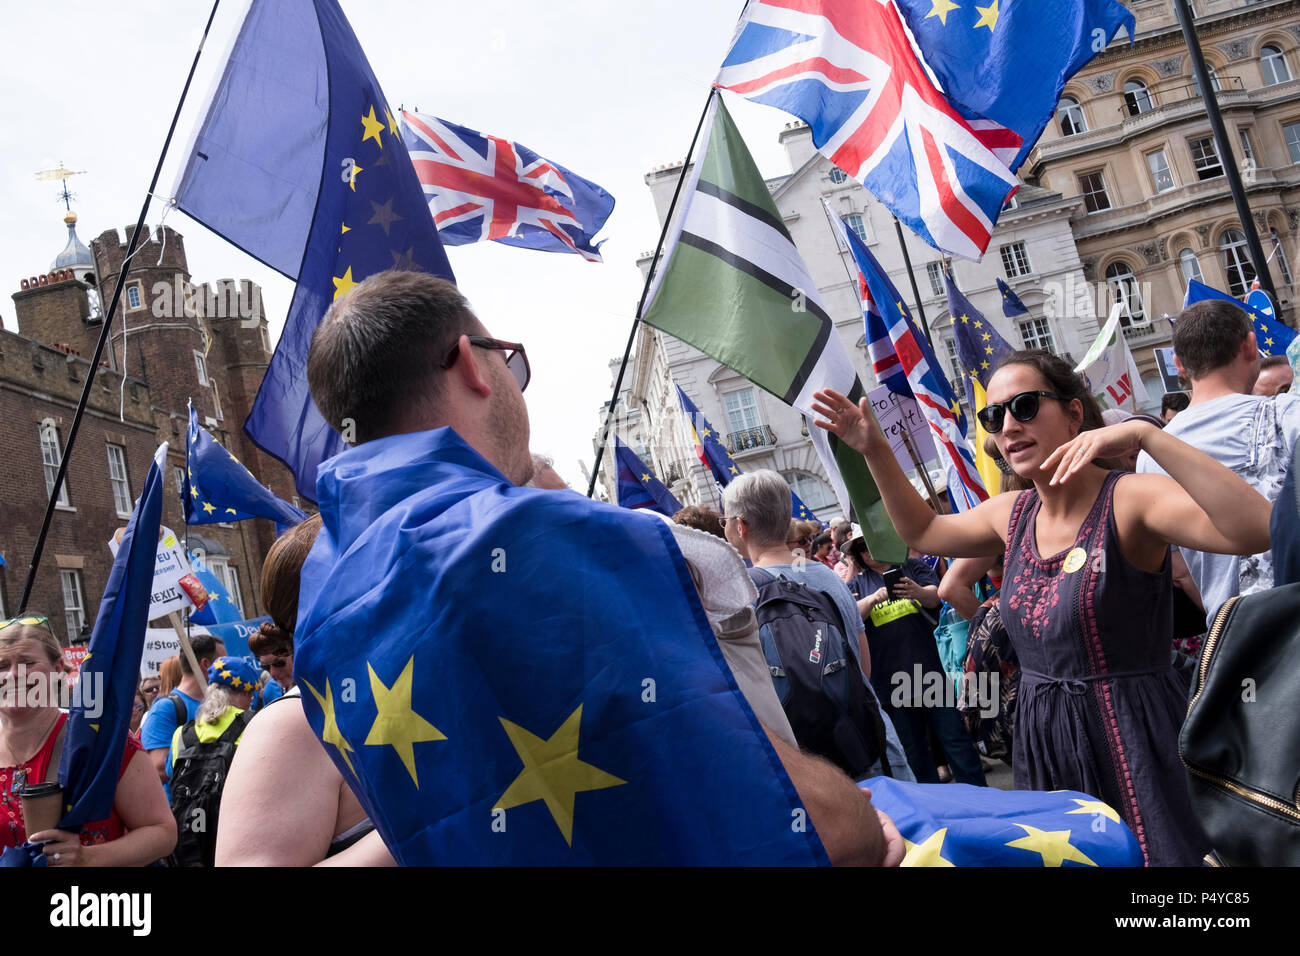 Londres, Reino Unido. El 23 de junio de 2018. Más de 100.000 personas marcharon por el centro de Londres para exigir una votación final sobre cualquier salida del Reino Unido, en el segundo aniversario de la votación Brexit. Manifestantes Anti-Brexit viajaron de todo el país a unirse a la manifestación, organizada por una serie de Westminster y basados en grupos de cabildeo de base y marca el lanzamiento de un programa nacional de petición para un "voto popular". Londres, Reino Unido. 23 de junio de 2018 Crédito: Mike Abrahams/Alamy Live News Foto de stock